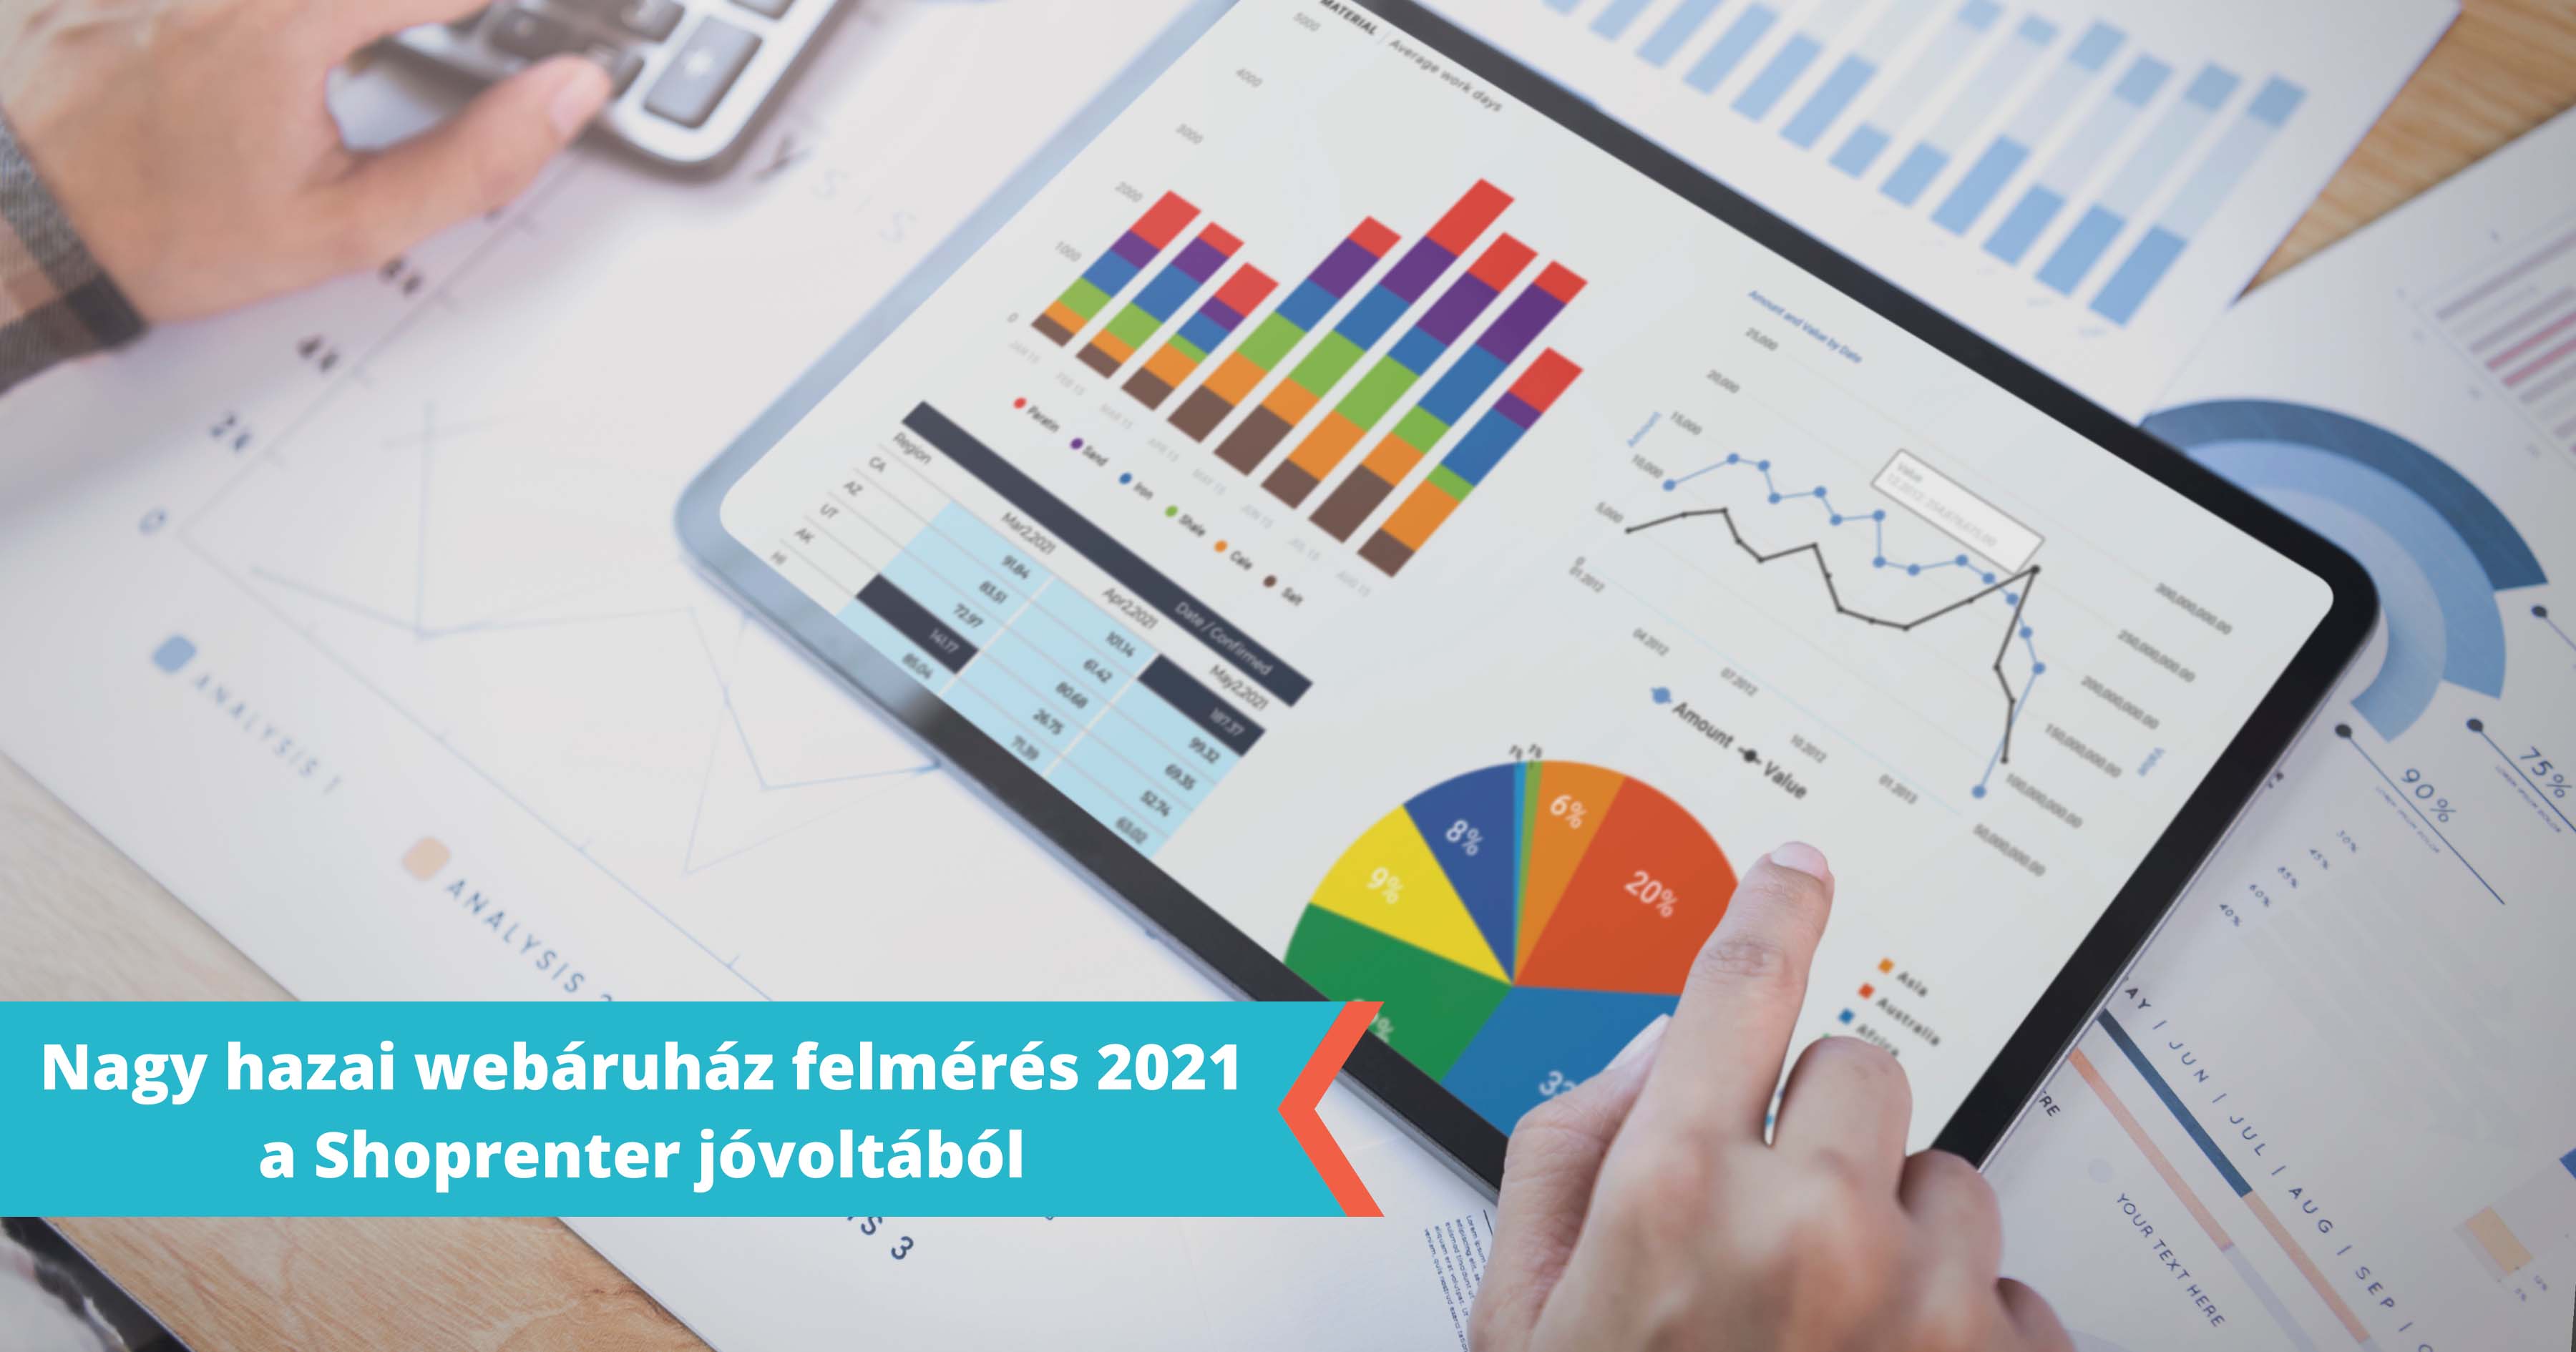 Webáruház statisztikák 2021: A hazai sebáruházak 2020-as és 2021 statisztikái az online marketinggel kapcsolatban.